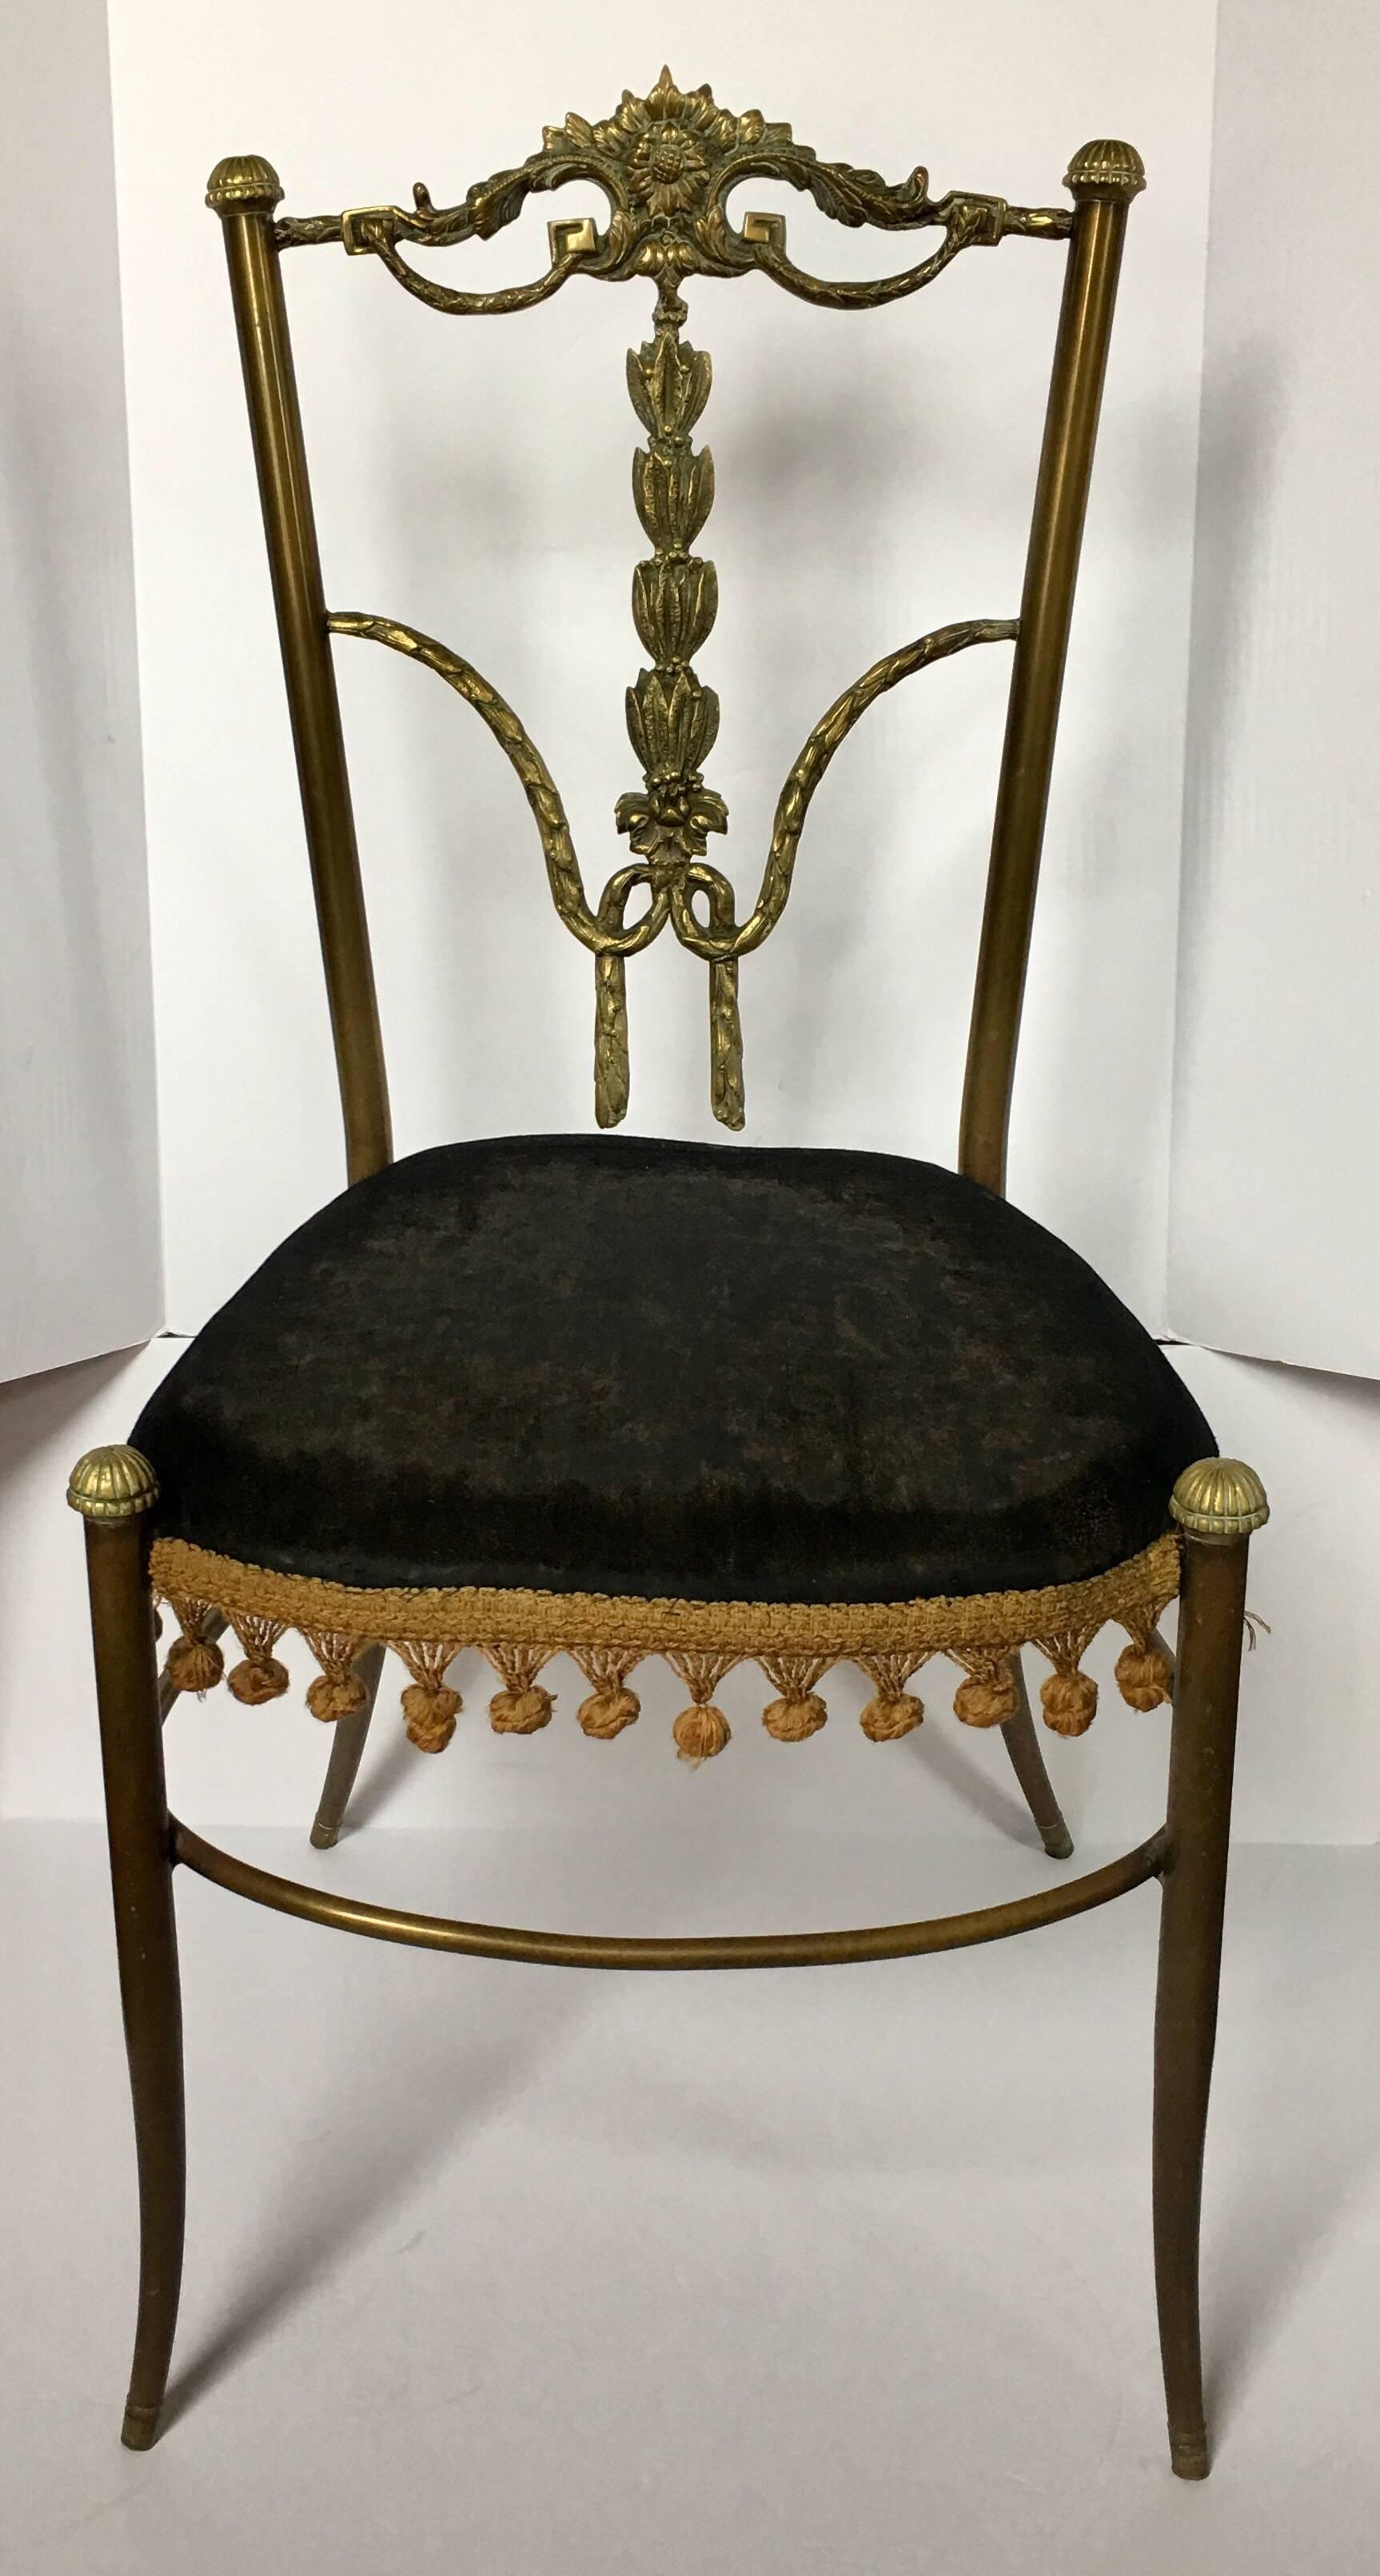 Chaise de bureau ou d'appoint en métal bronze des années 1950, dont le dossier est orné de motifs de guirlandes florales drapées et de détails en forme de clé grecque. Le siège est en velours noir d'origine avec des franges dorées.
